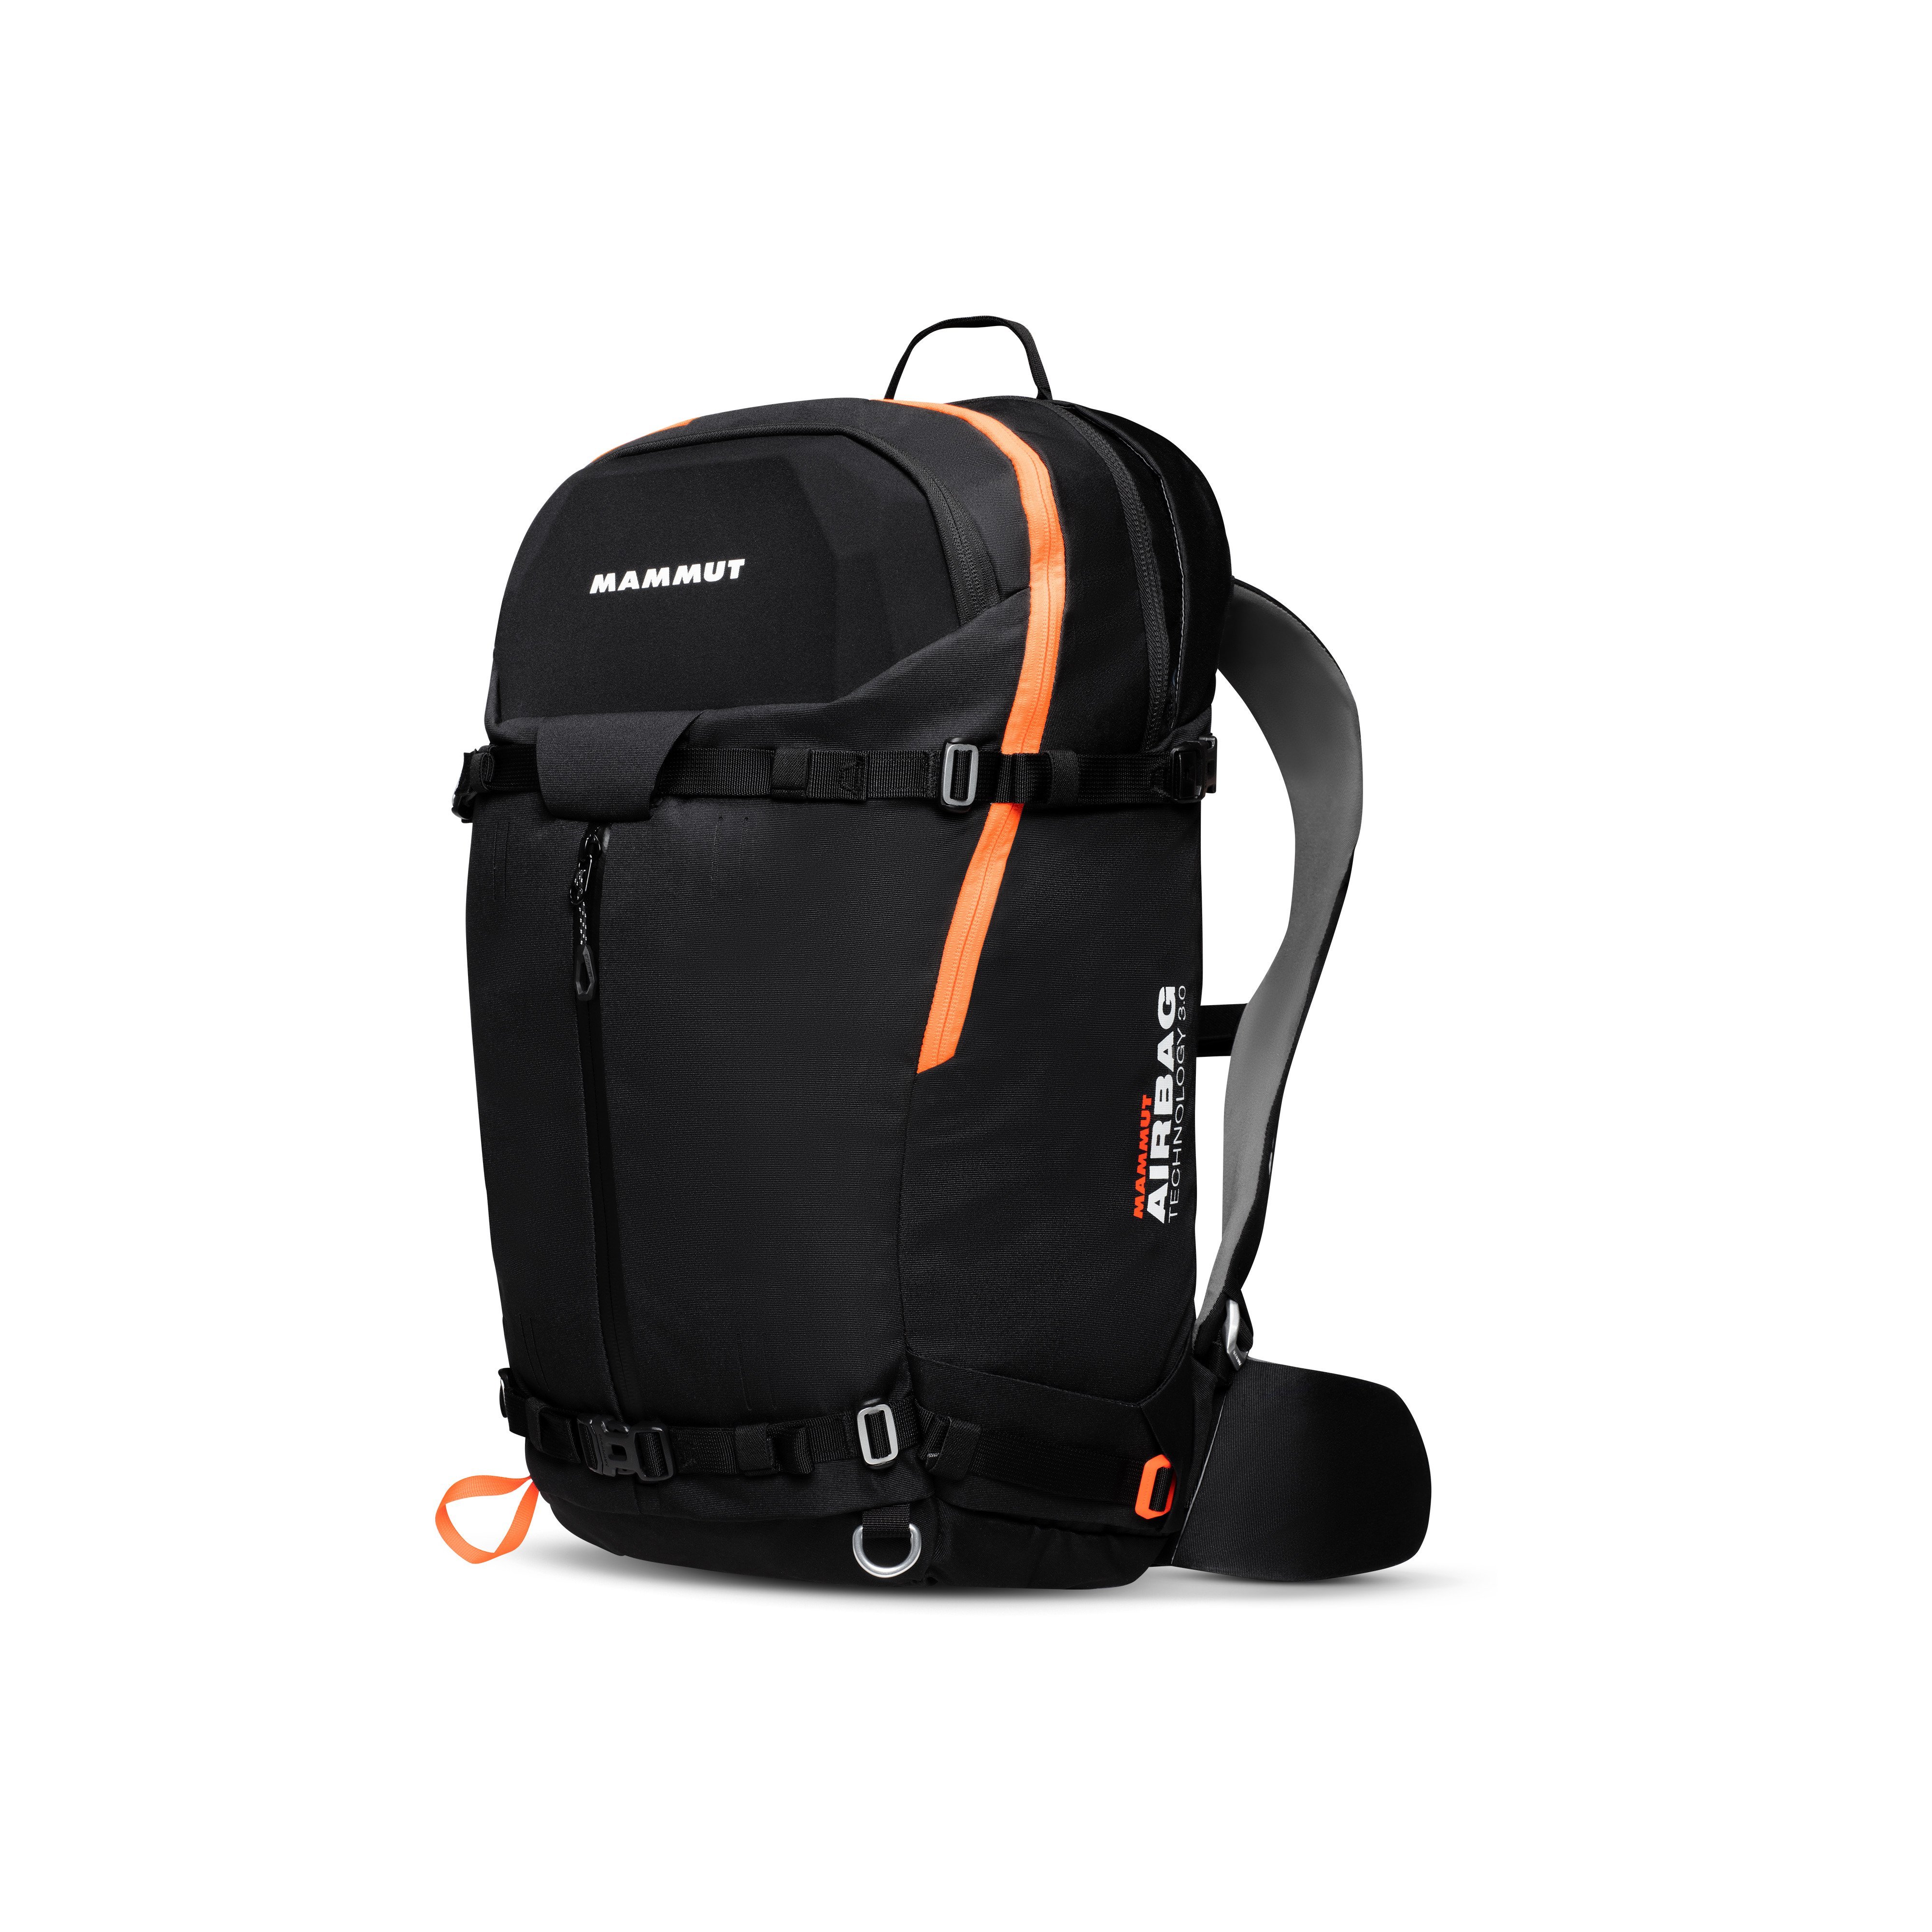 Pro X Removable Airbag 3.0 ready - black-vibrant orange, 35 L thumbnail